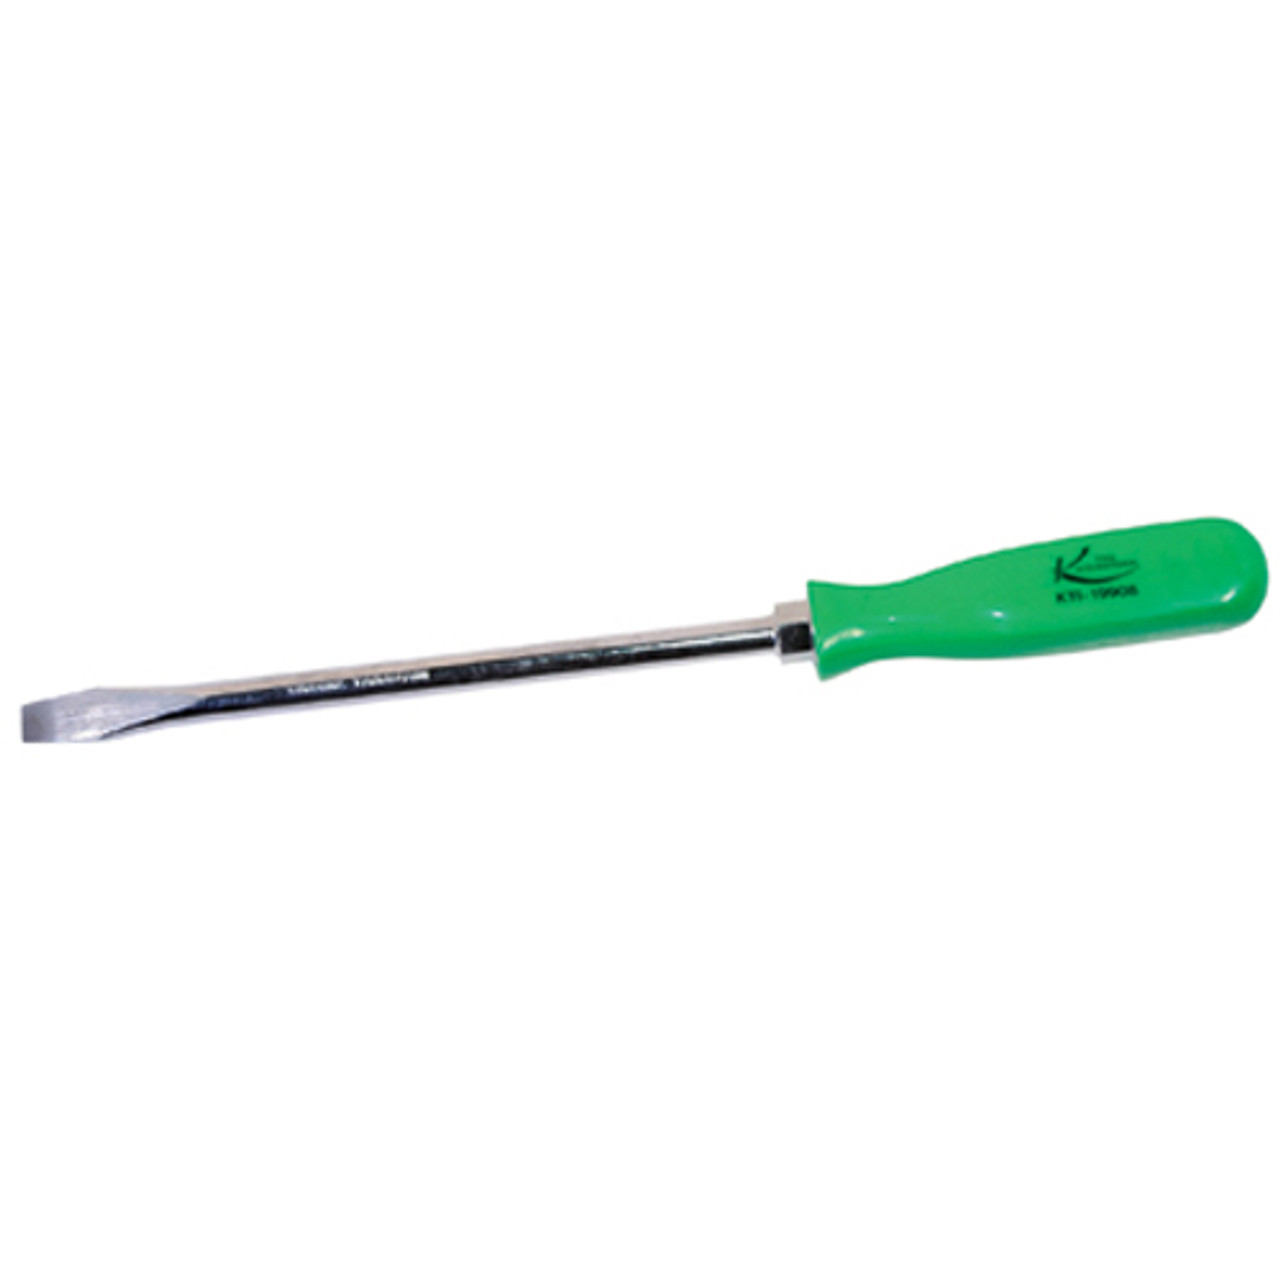 Lager Swipe Delegeret K Tool 19908 skruetrækker, slidsspids, 8" lang klinge, med grønt  plastikhåndtag | JB Tools